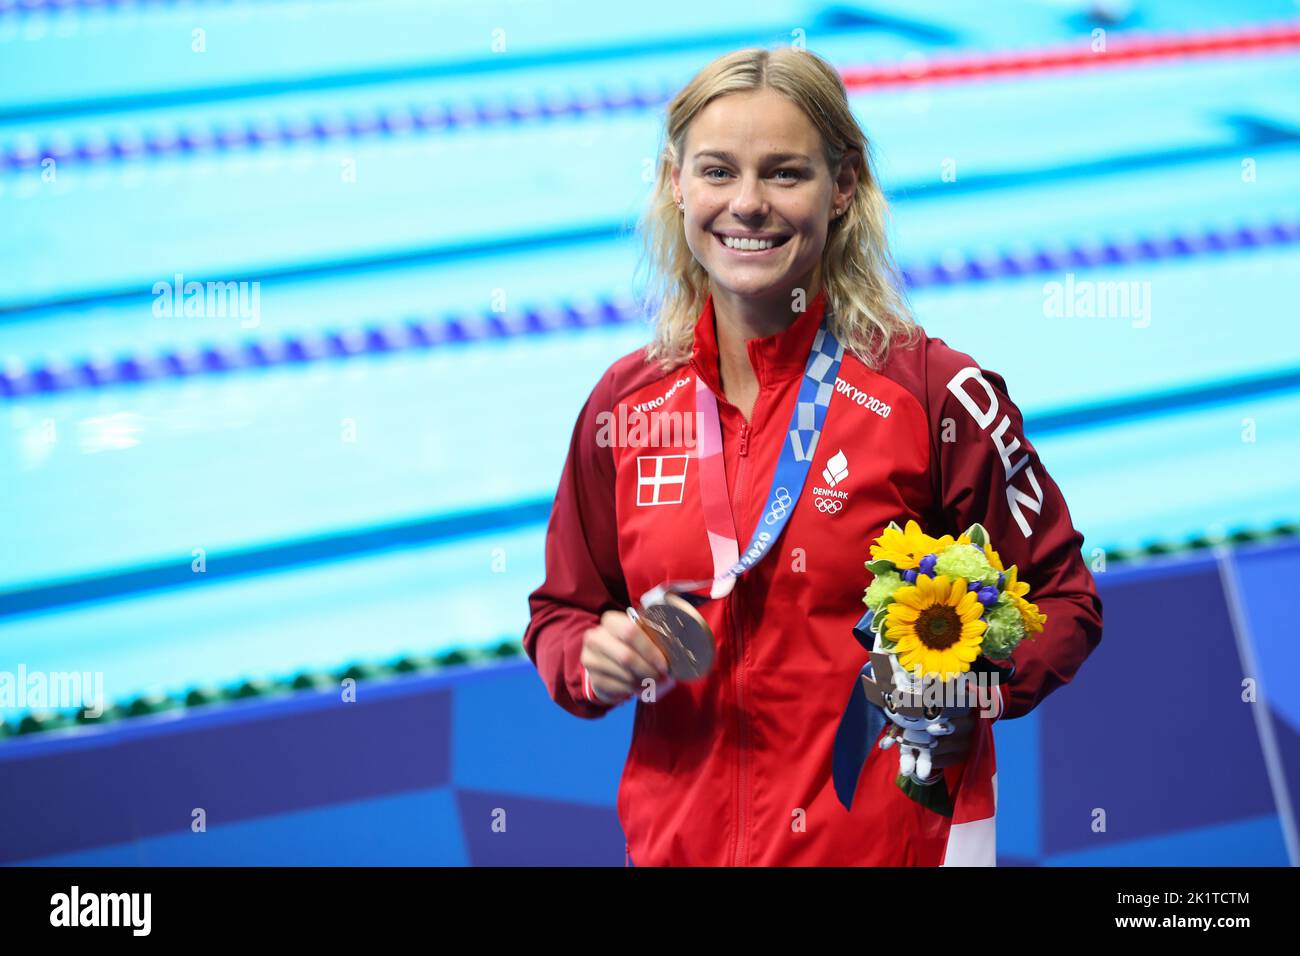 1.. AUGUST 2021 - TOKIO, JAPAN: Pernille BLUME aus Dänemark gewinnt die Bronzemedaille beim Freistil-Finale der Schwimmerinnen 50m bei den Olympischen Spielen in Tokio 2020 (Foto: Mickael Chavet/RX) Stockfoto